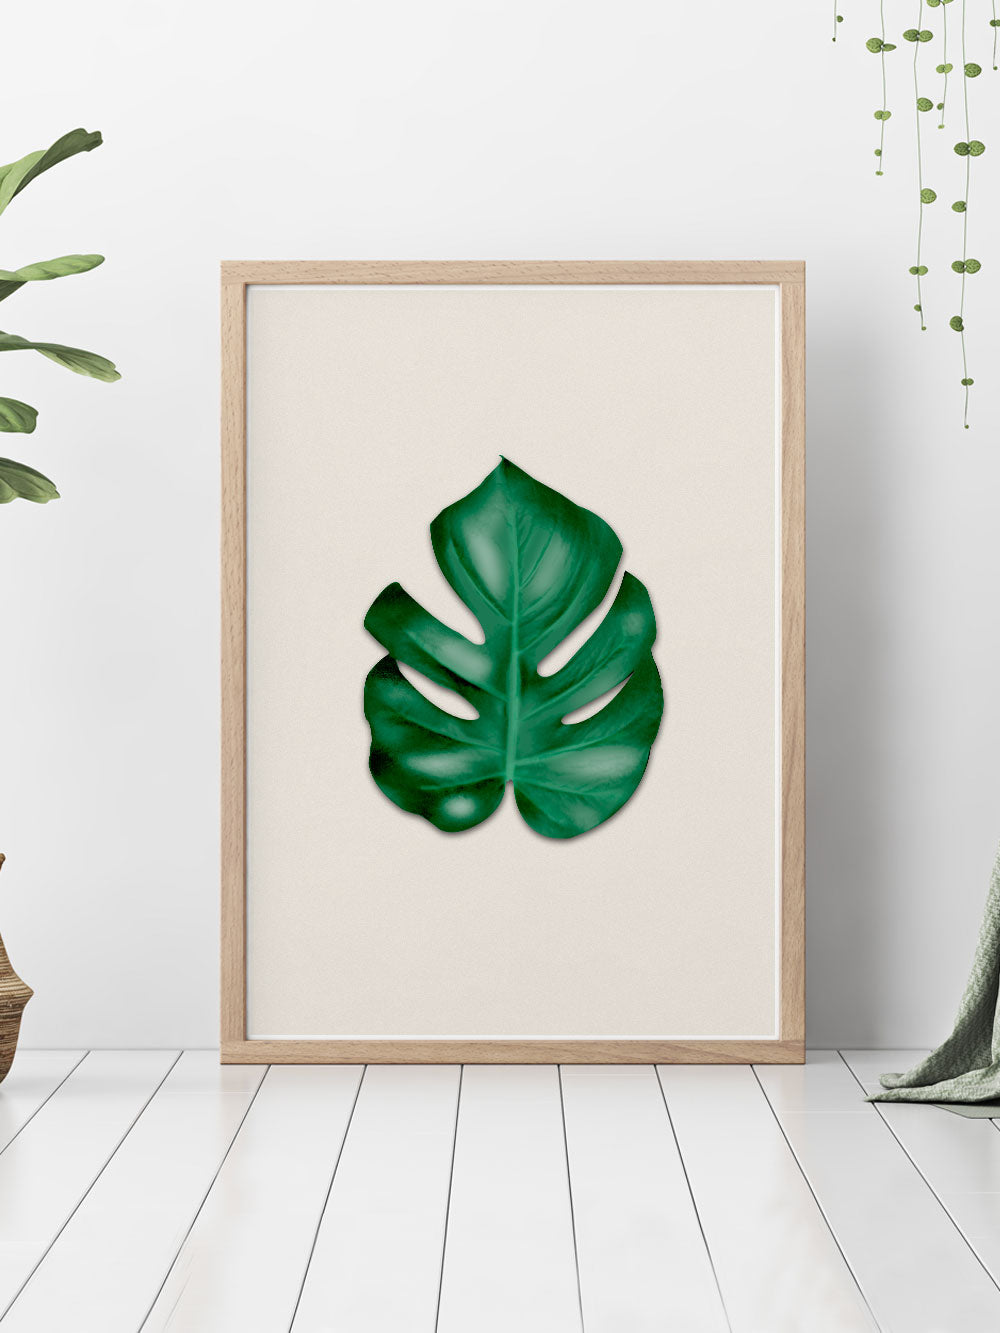 Stunning Monstera Leaf Art Print showcased on a bedroom floor